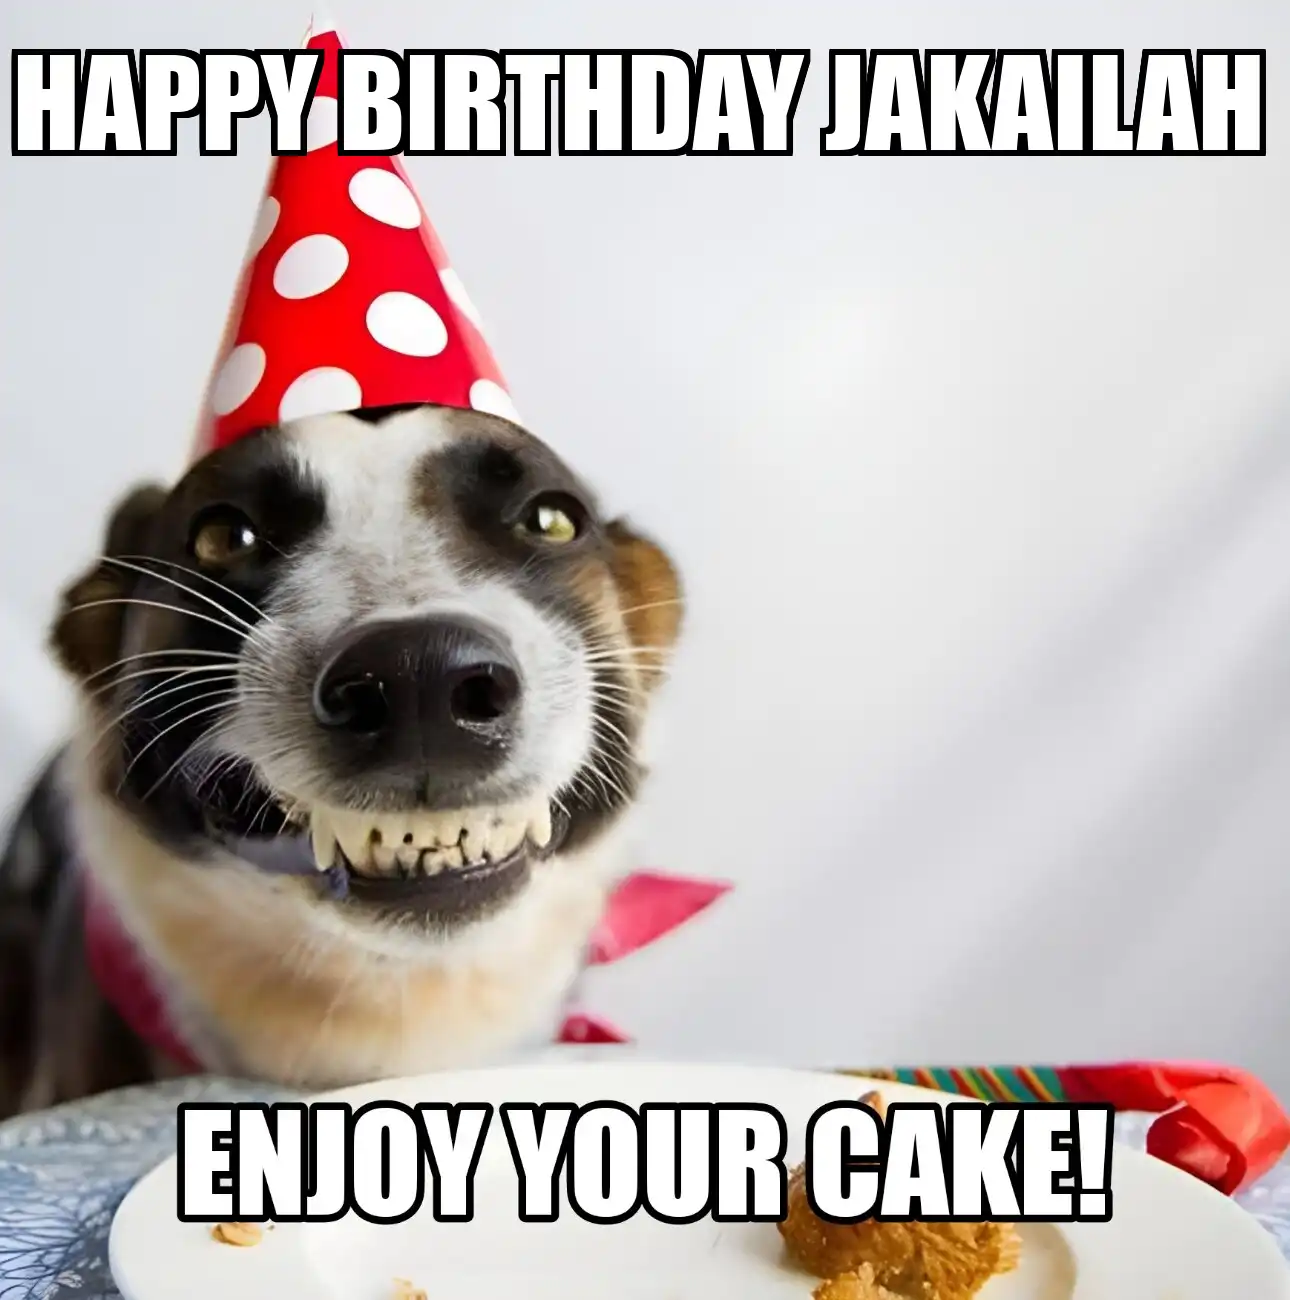 Happy Birthday Jakailah Enjoy Your Cake Dog Meme